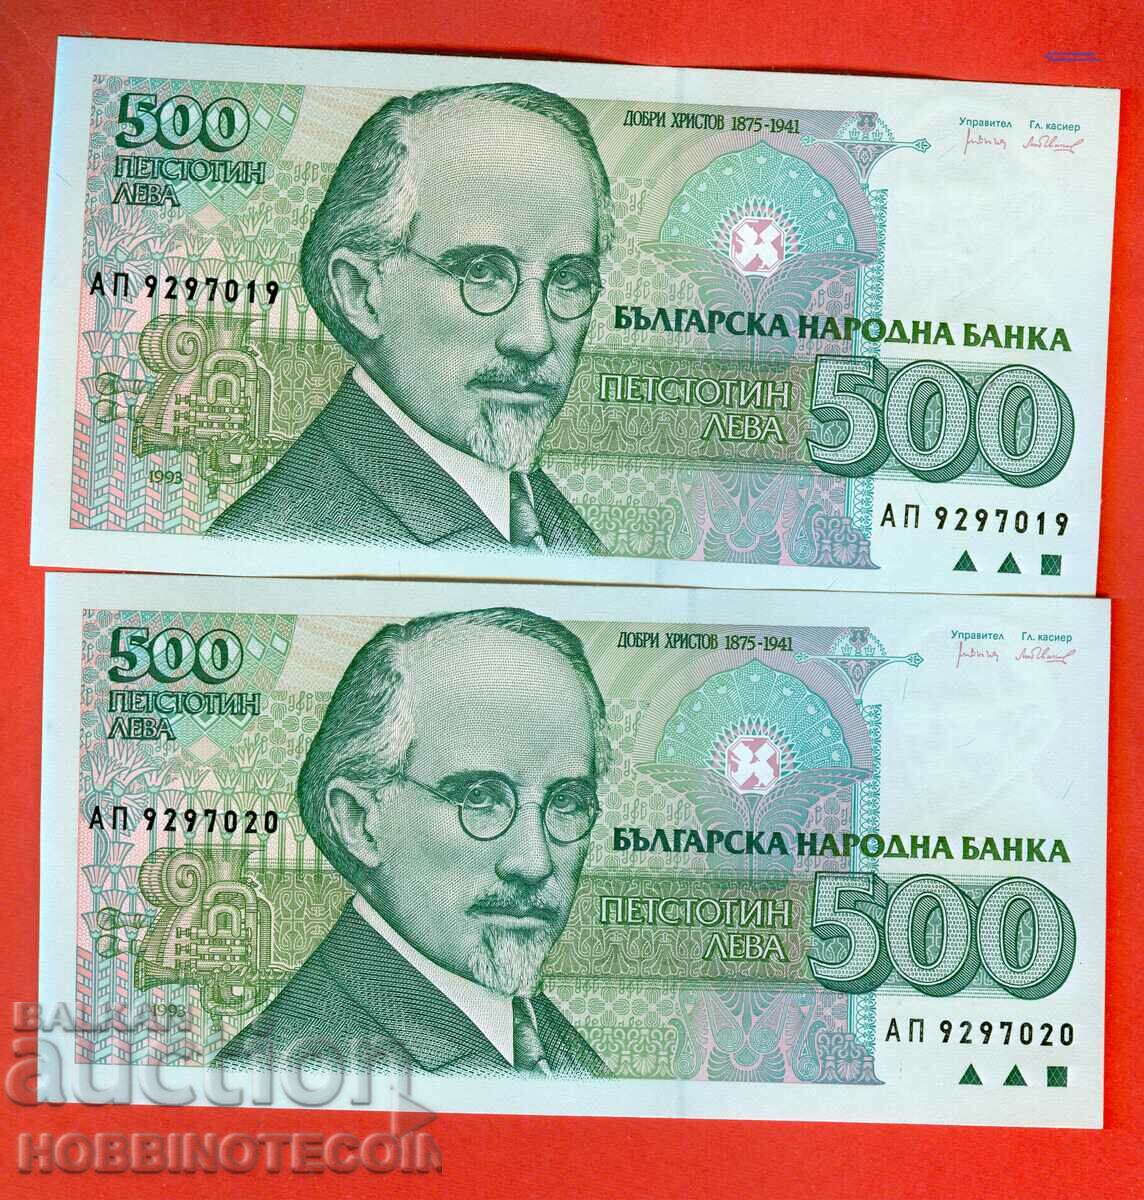 BULGARIA BULGARIA PERECHE 2 x 500 Leva 1993 SERIA AP NOU UNC